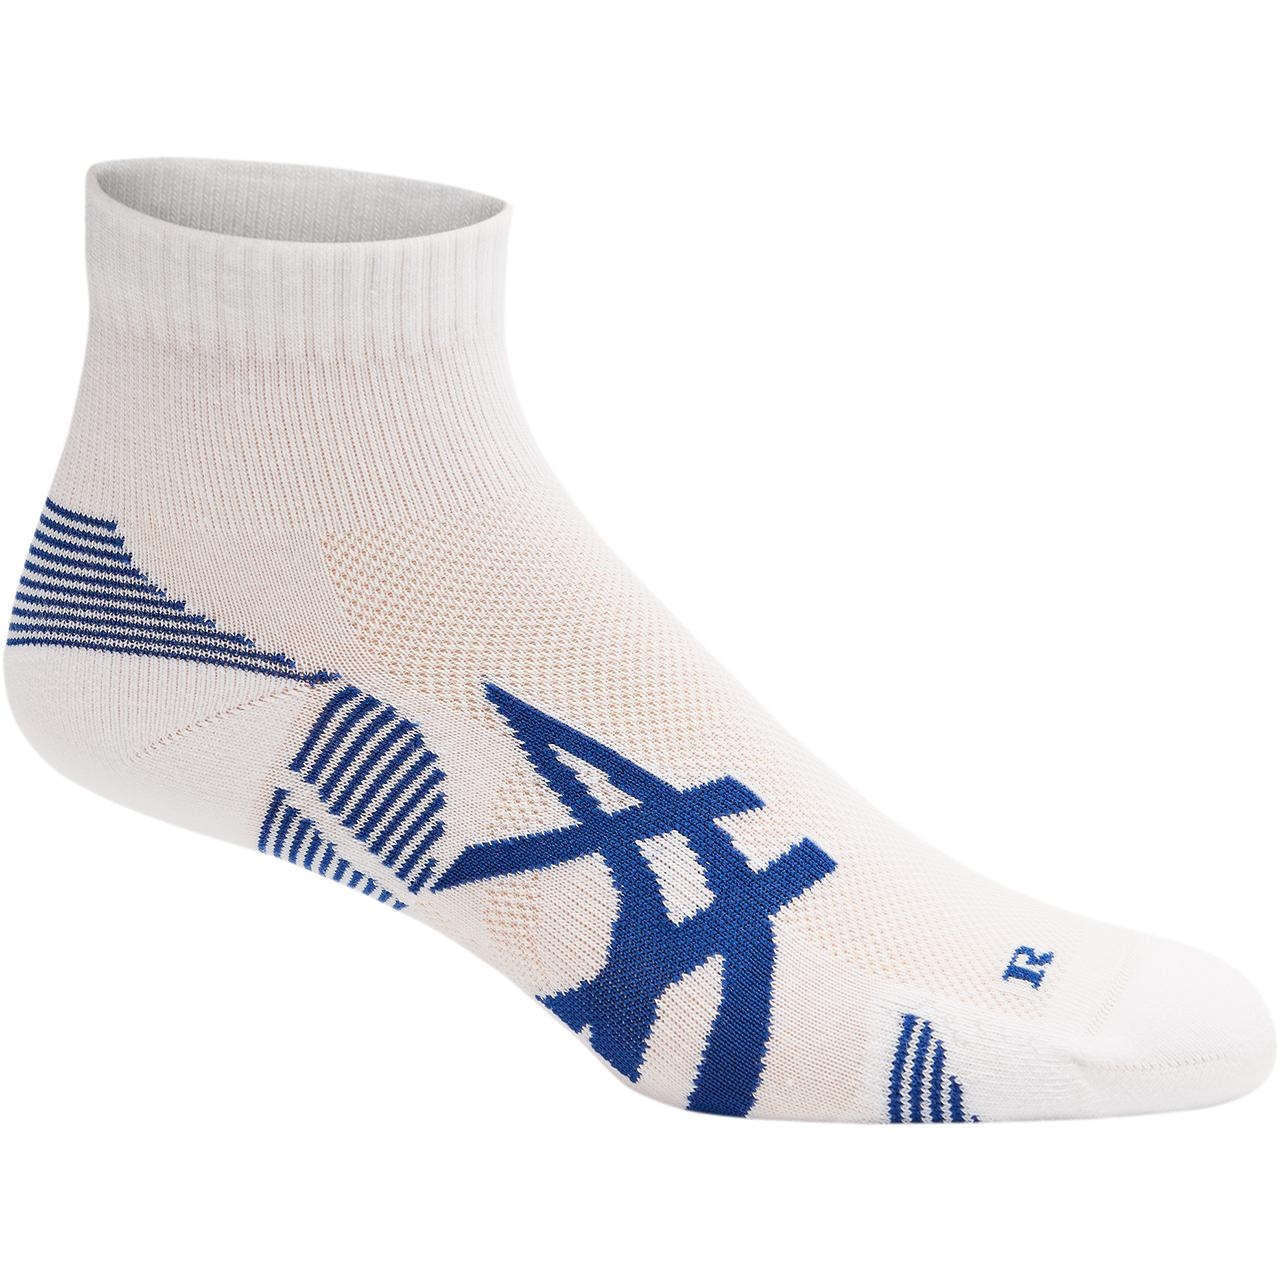 Produktbild von asics 2PPK Cushioning Socken - 2er Pack - brilliant white/asics blue